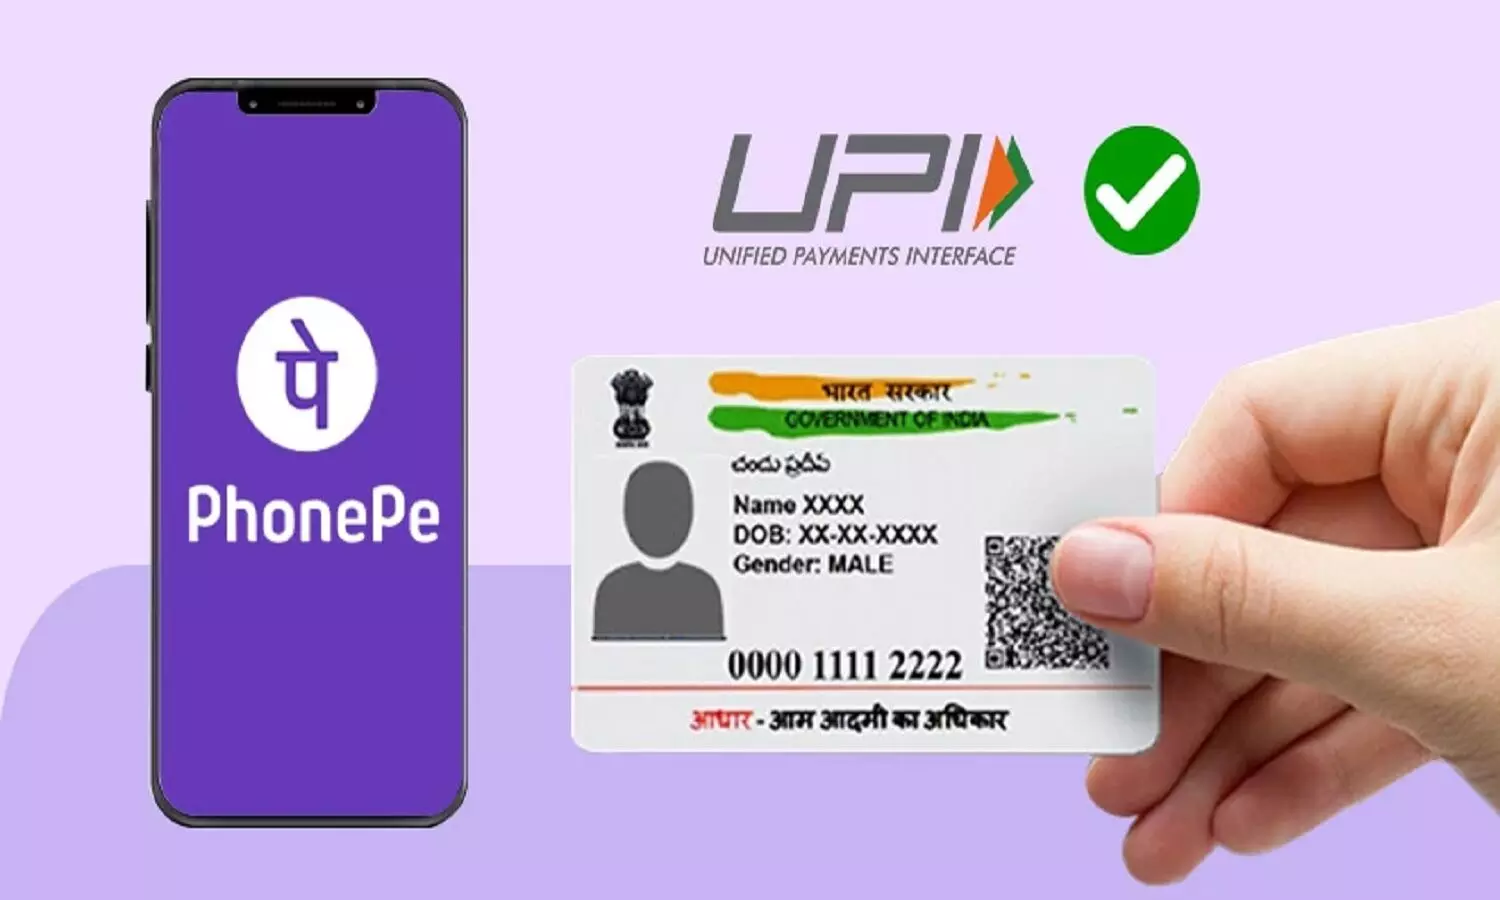 बिना डेबिट कार्ड के अब PhonePe पर UPI एक्टिवेट करके लेनदेन कर सकेंगे, जानें पूरी प्रोसेस